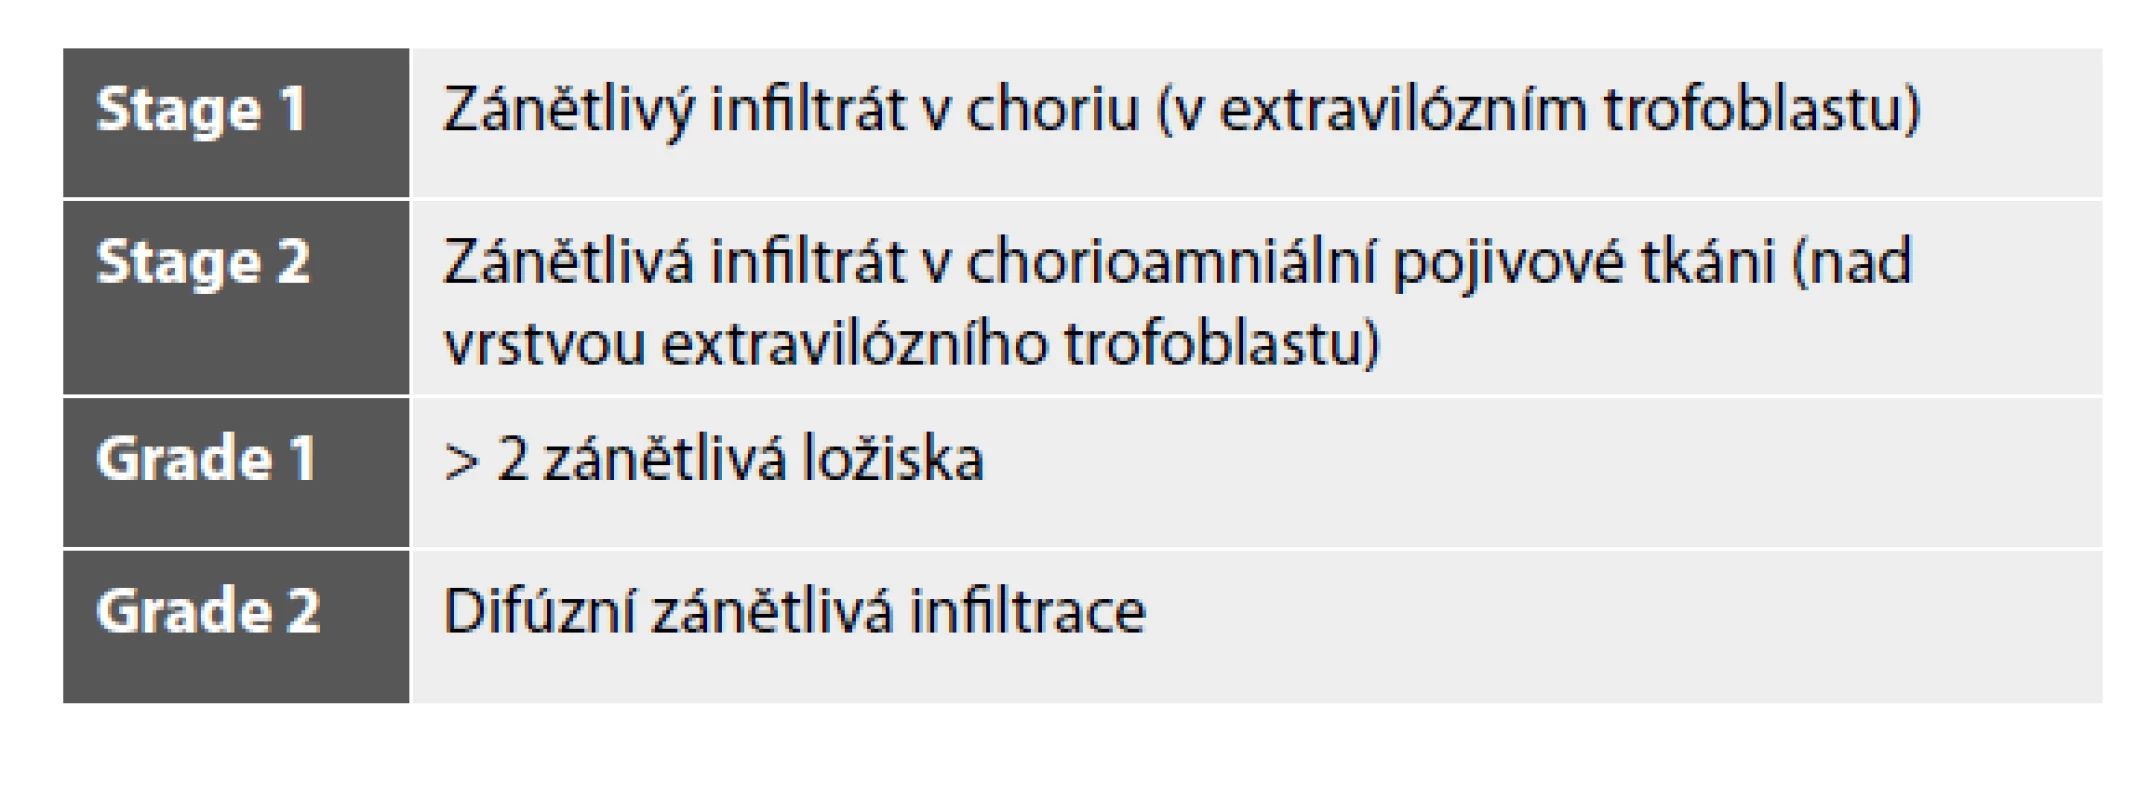 Chronická chorioamnionitida – doporučená klasifikace.